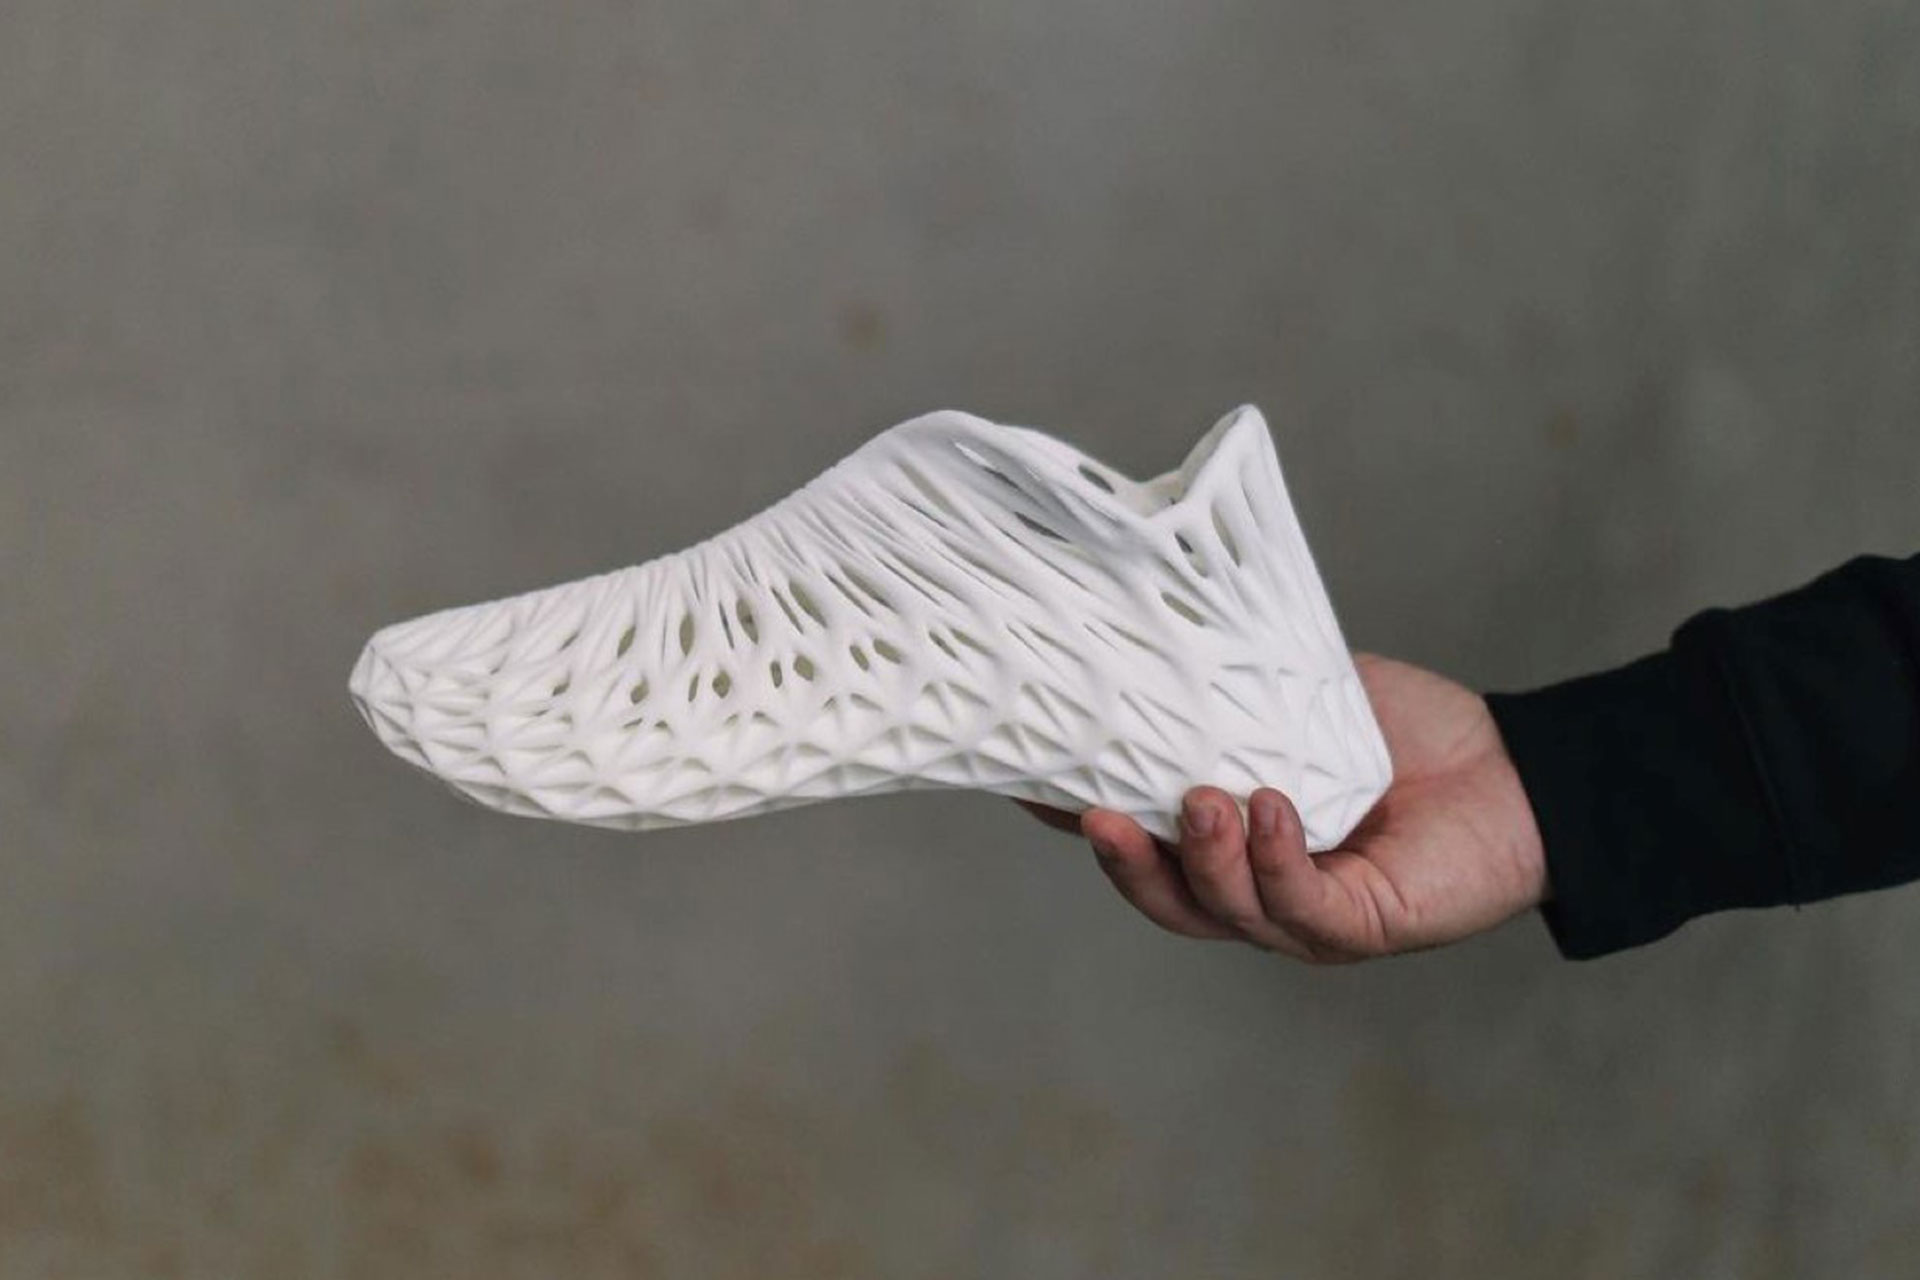 footwear industry 3D printing